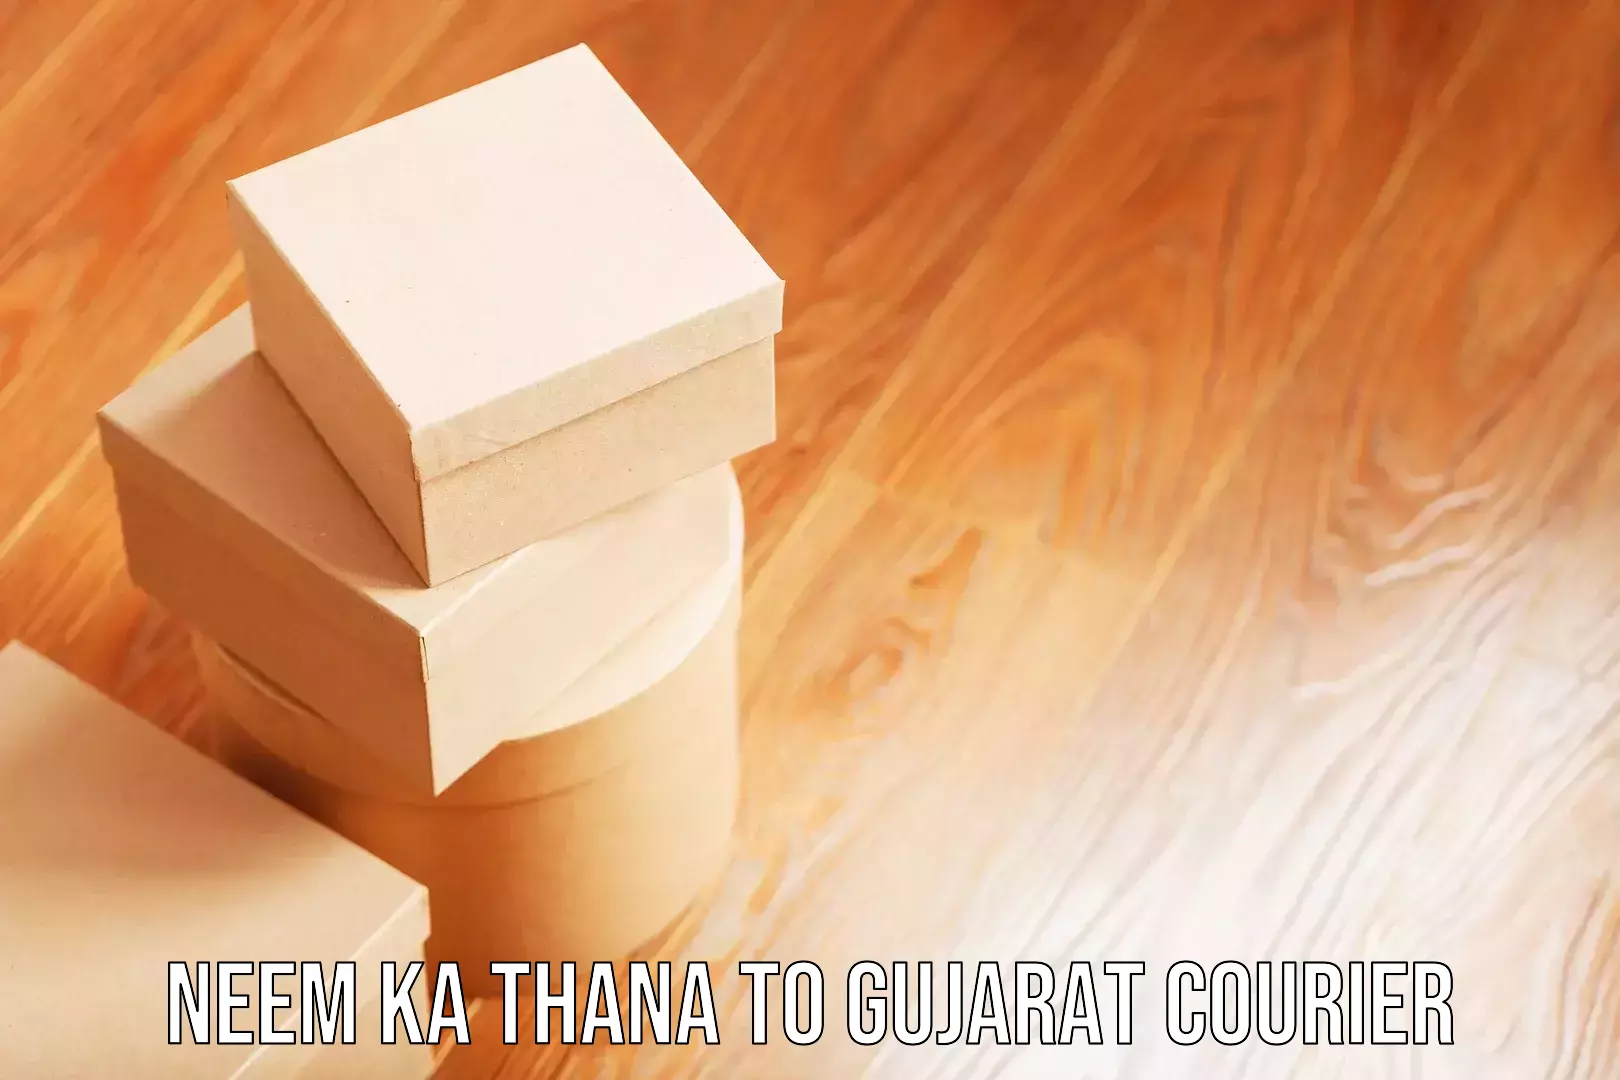 Luggage courier network Neem ka Thana to Gujarat